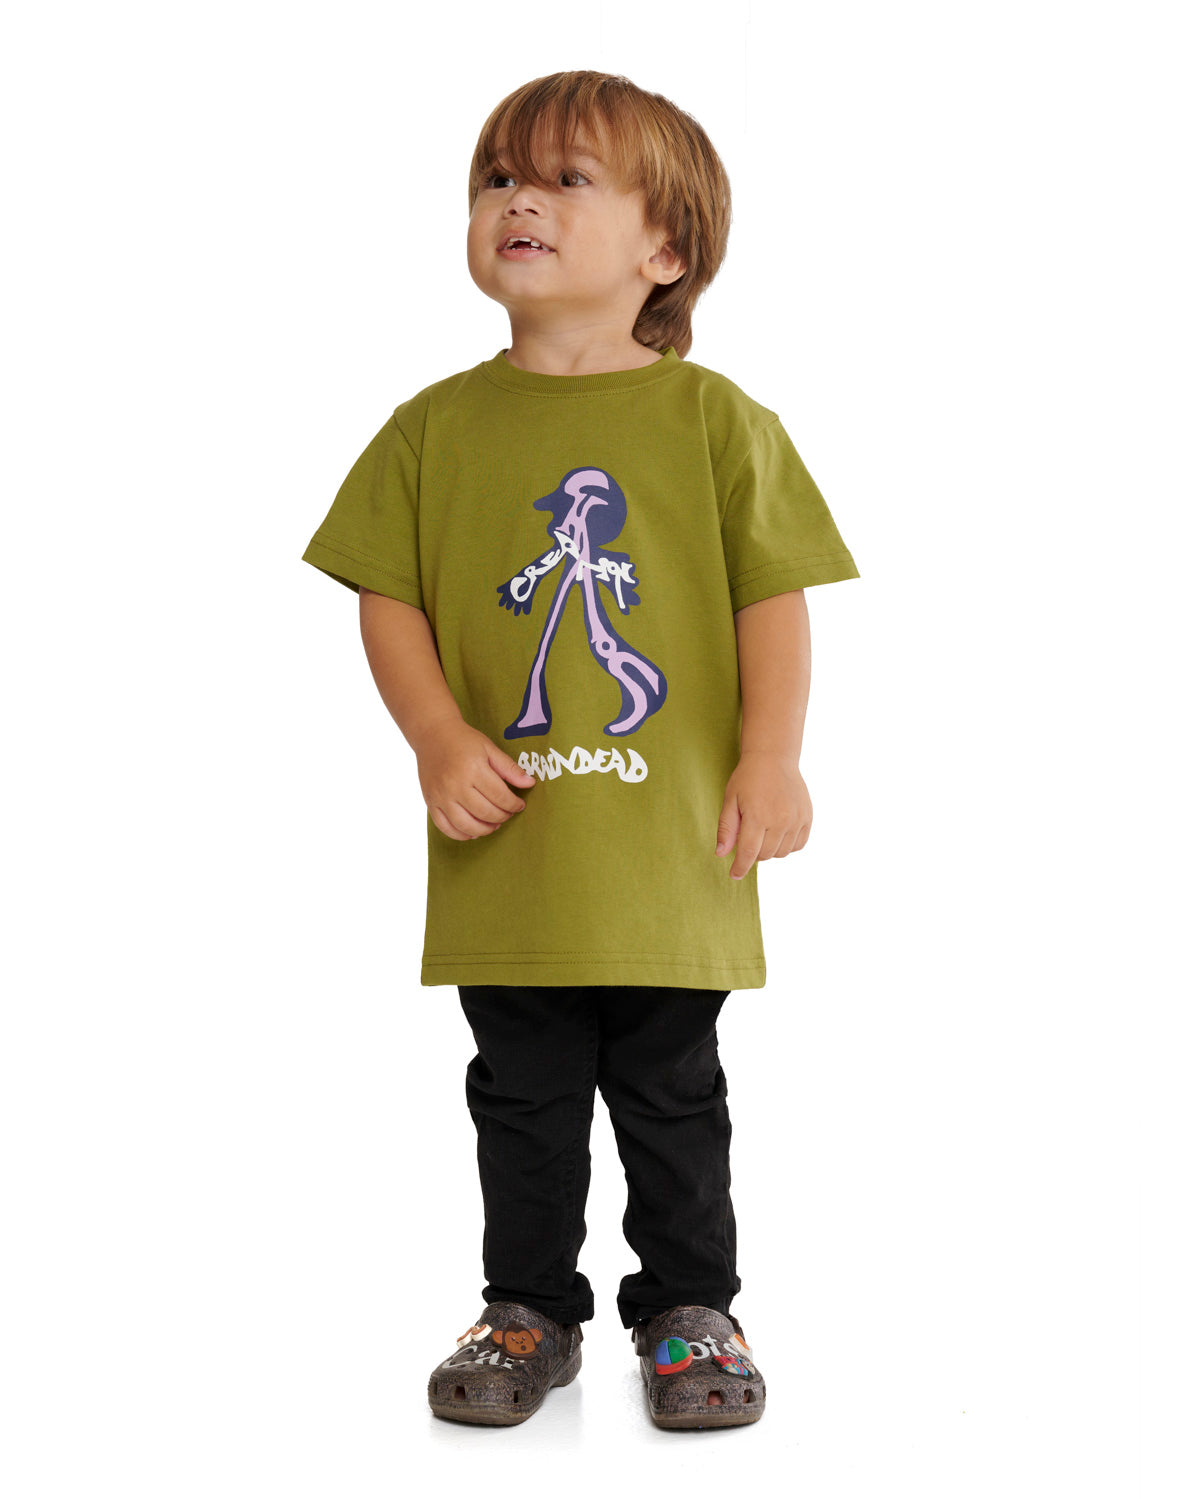 Creeper Kids T-Shirt - Moss 4